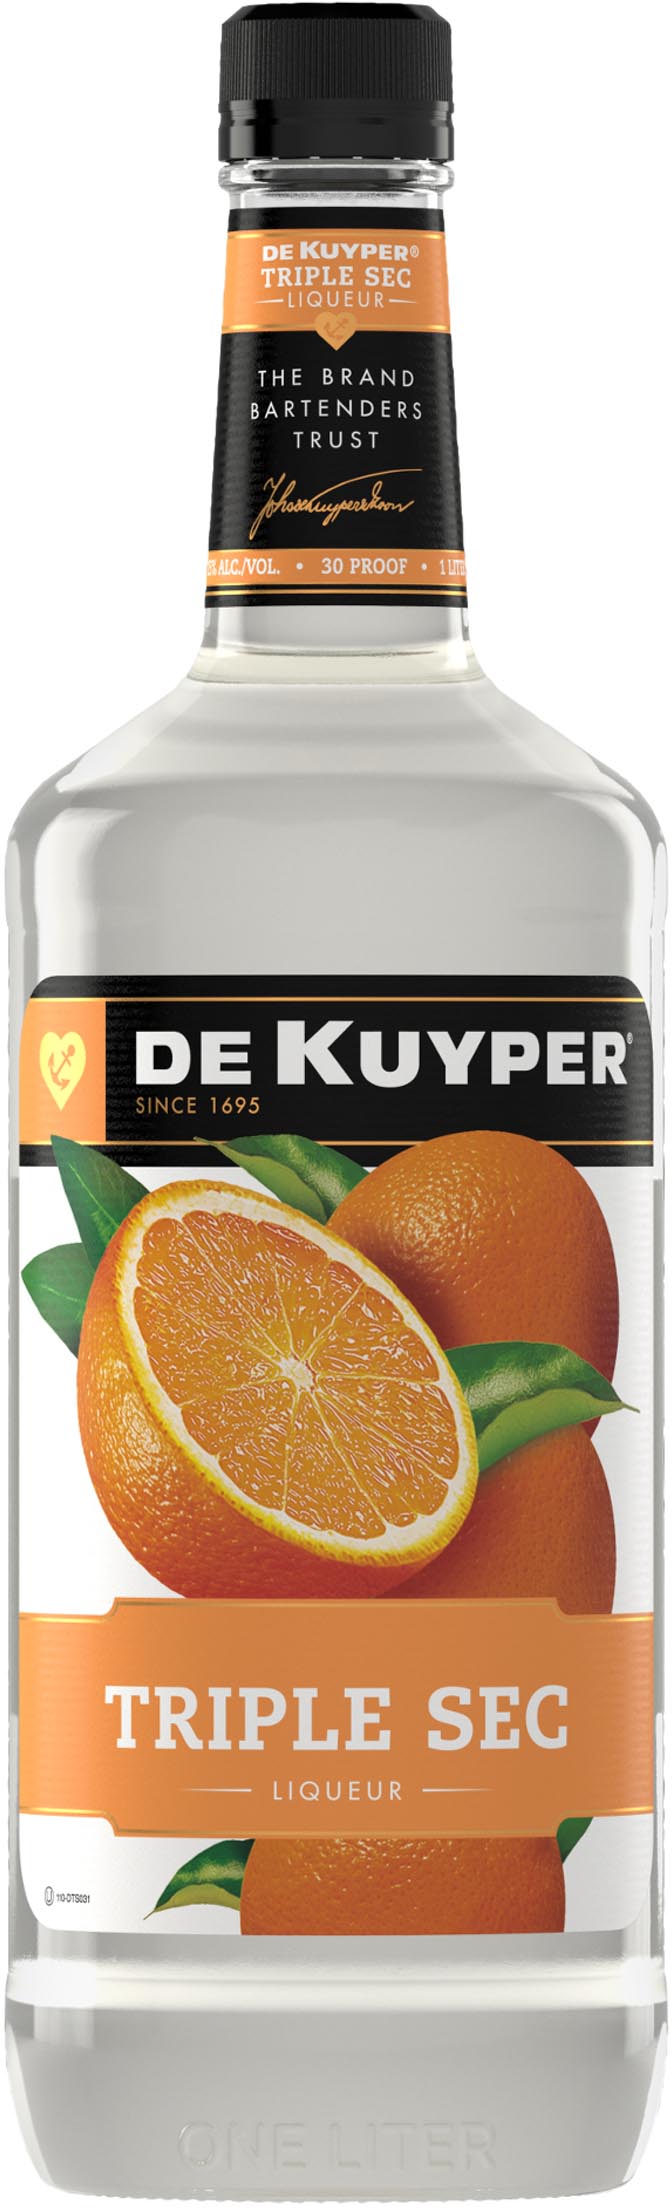 DeKuyper Triple Sec Liqueur 1.75L (30 Proof) – BevMo!